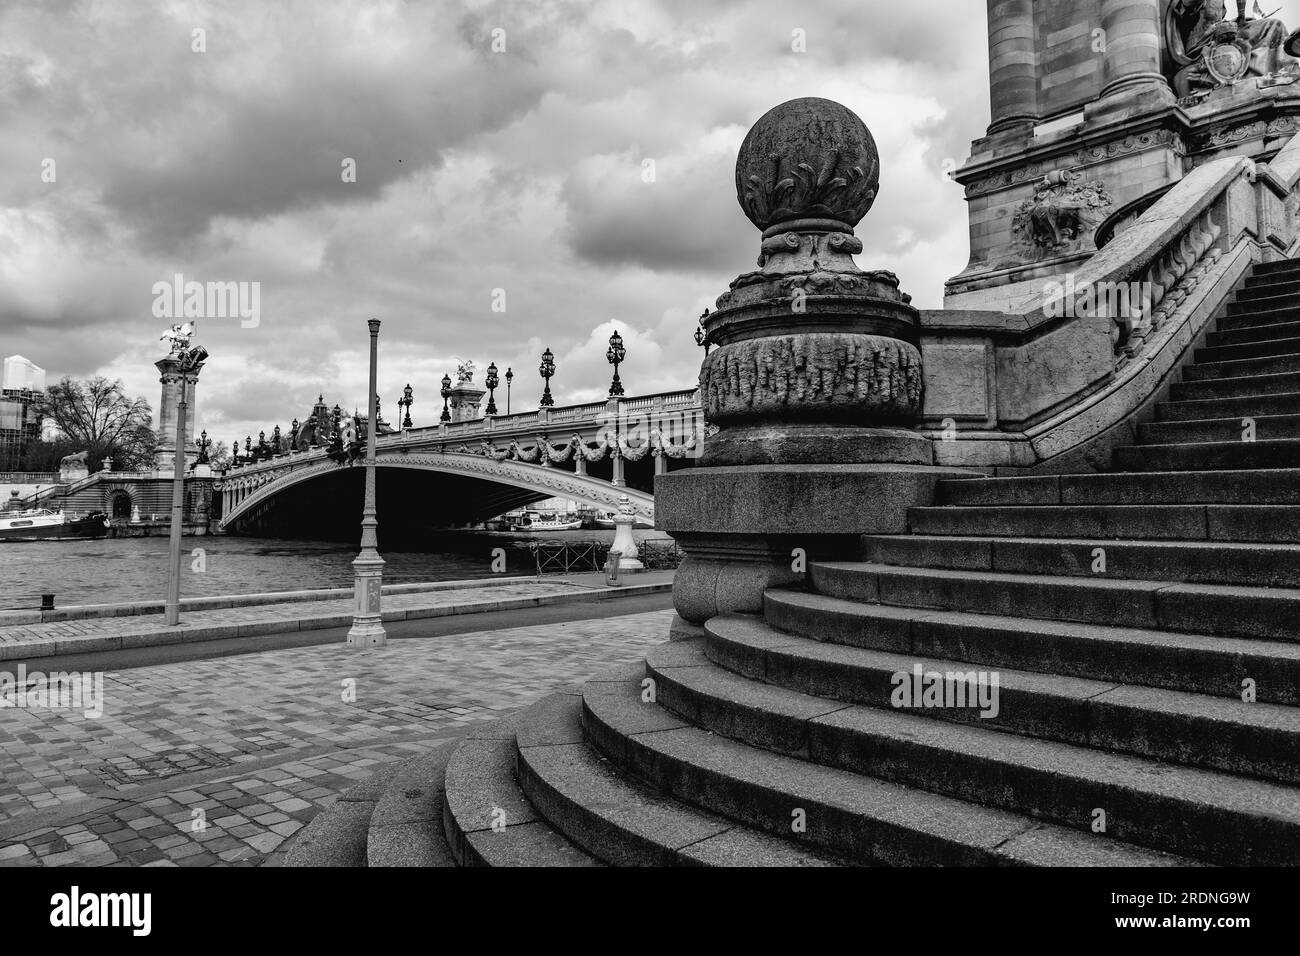 Il Pont Alexandre III è un ponte ad arco che attraversa la Senna a Parigi. Collega il quartiere degli Champs-Elysees con quelli degli Invalides e del FEI Foto Stock